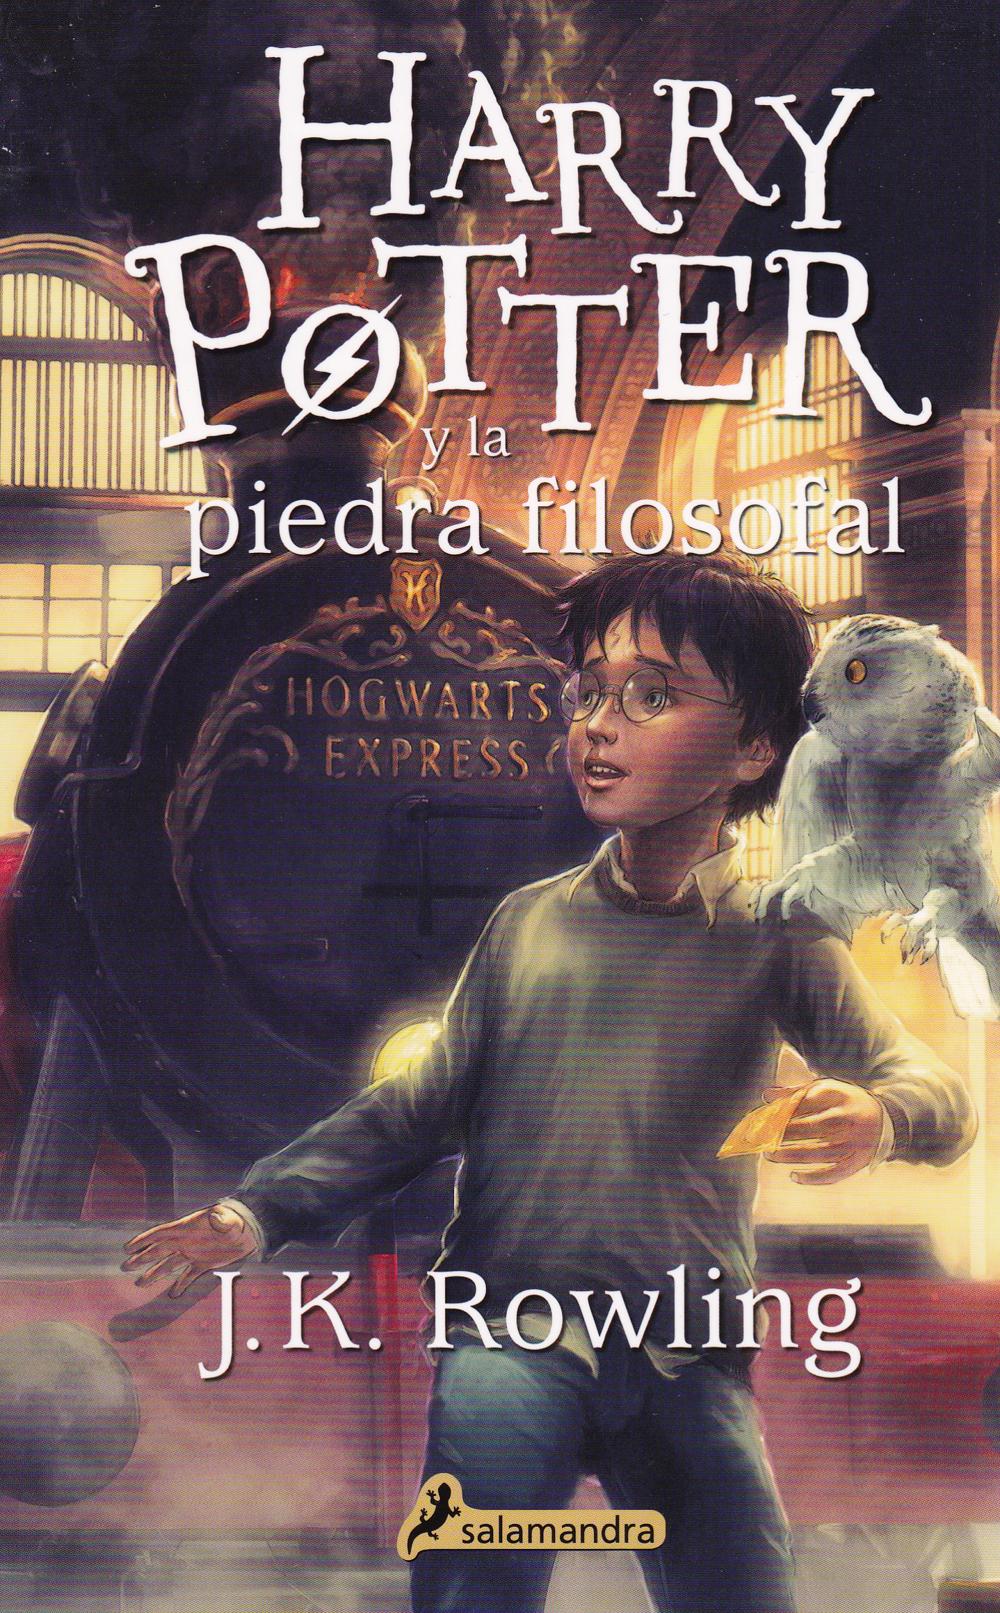 Harry Potter Collection, Rey Del Sol, Del Sol Books, Del Sol University